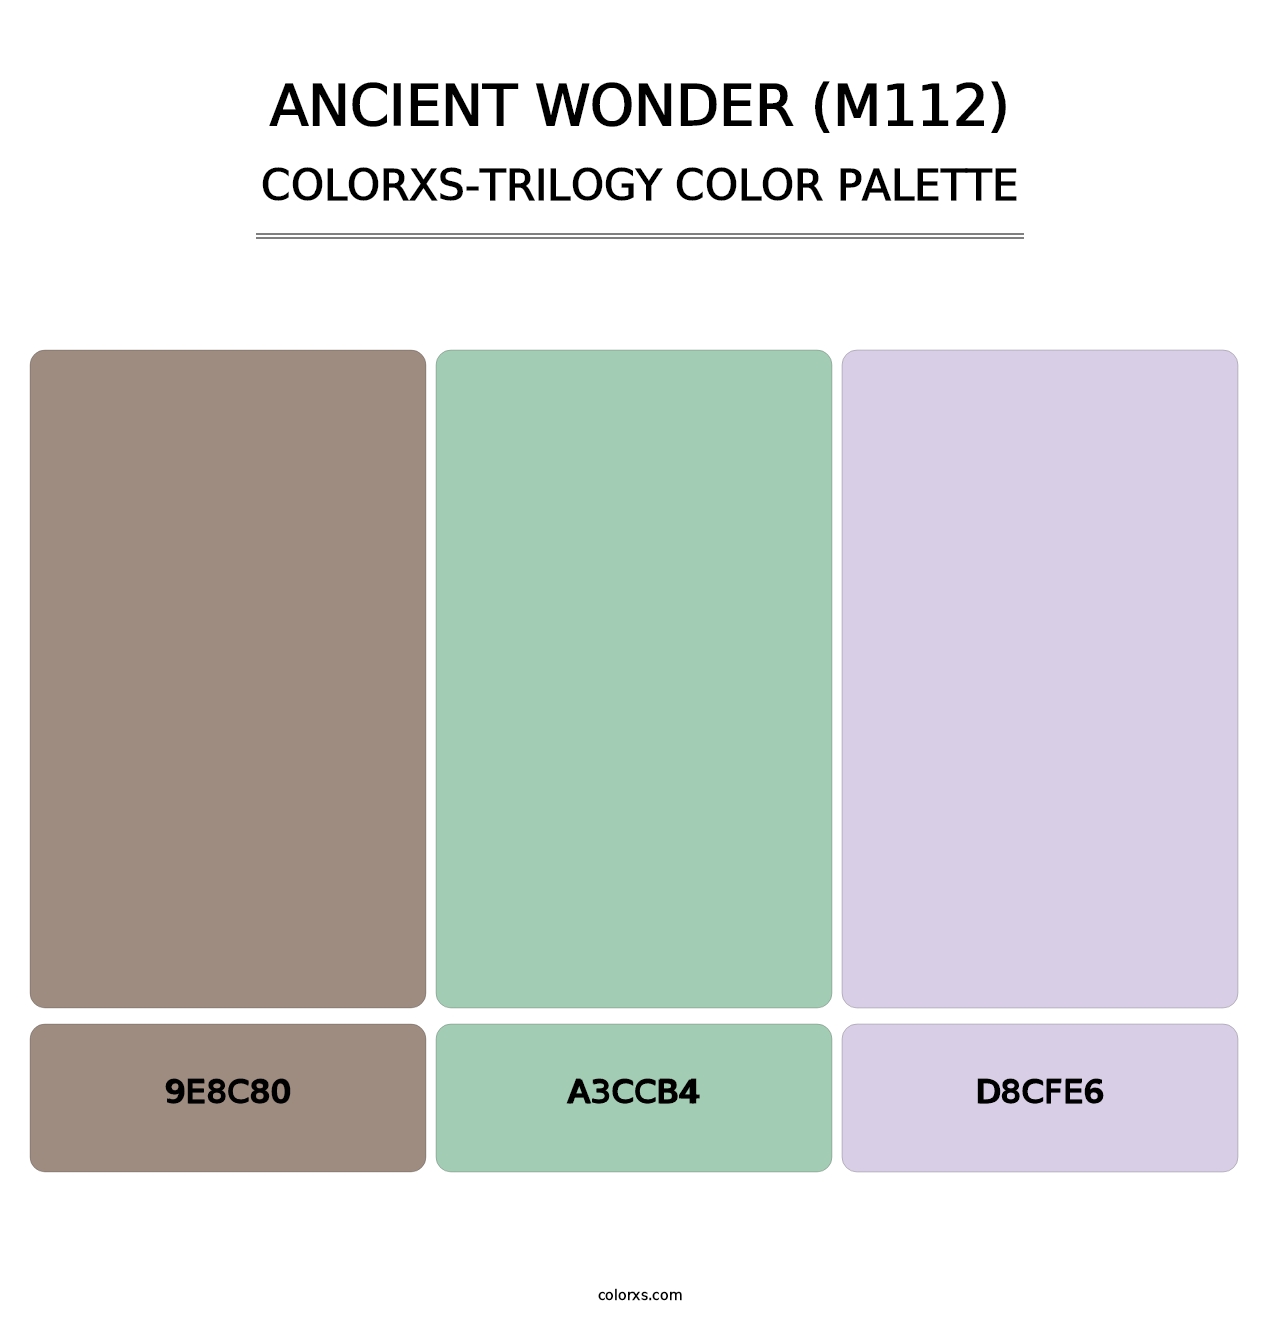 Ancient Wonder (M112) - Colorxs Trilogy Palette